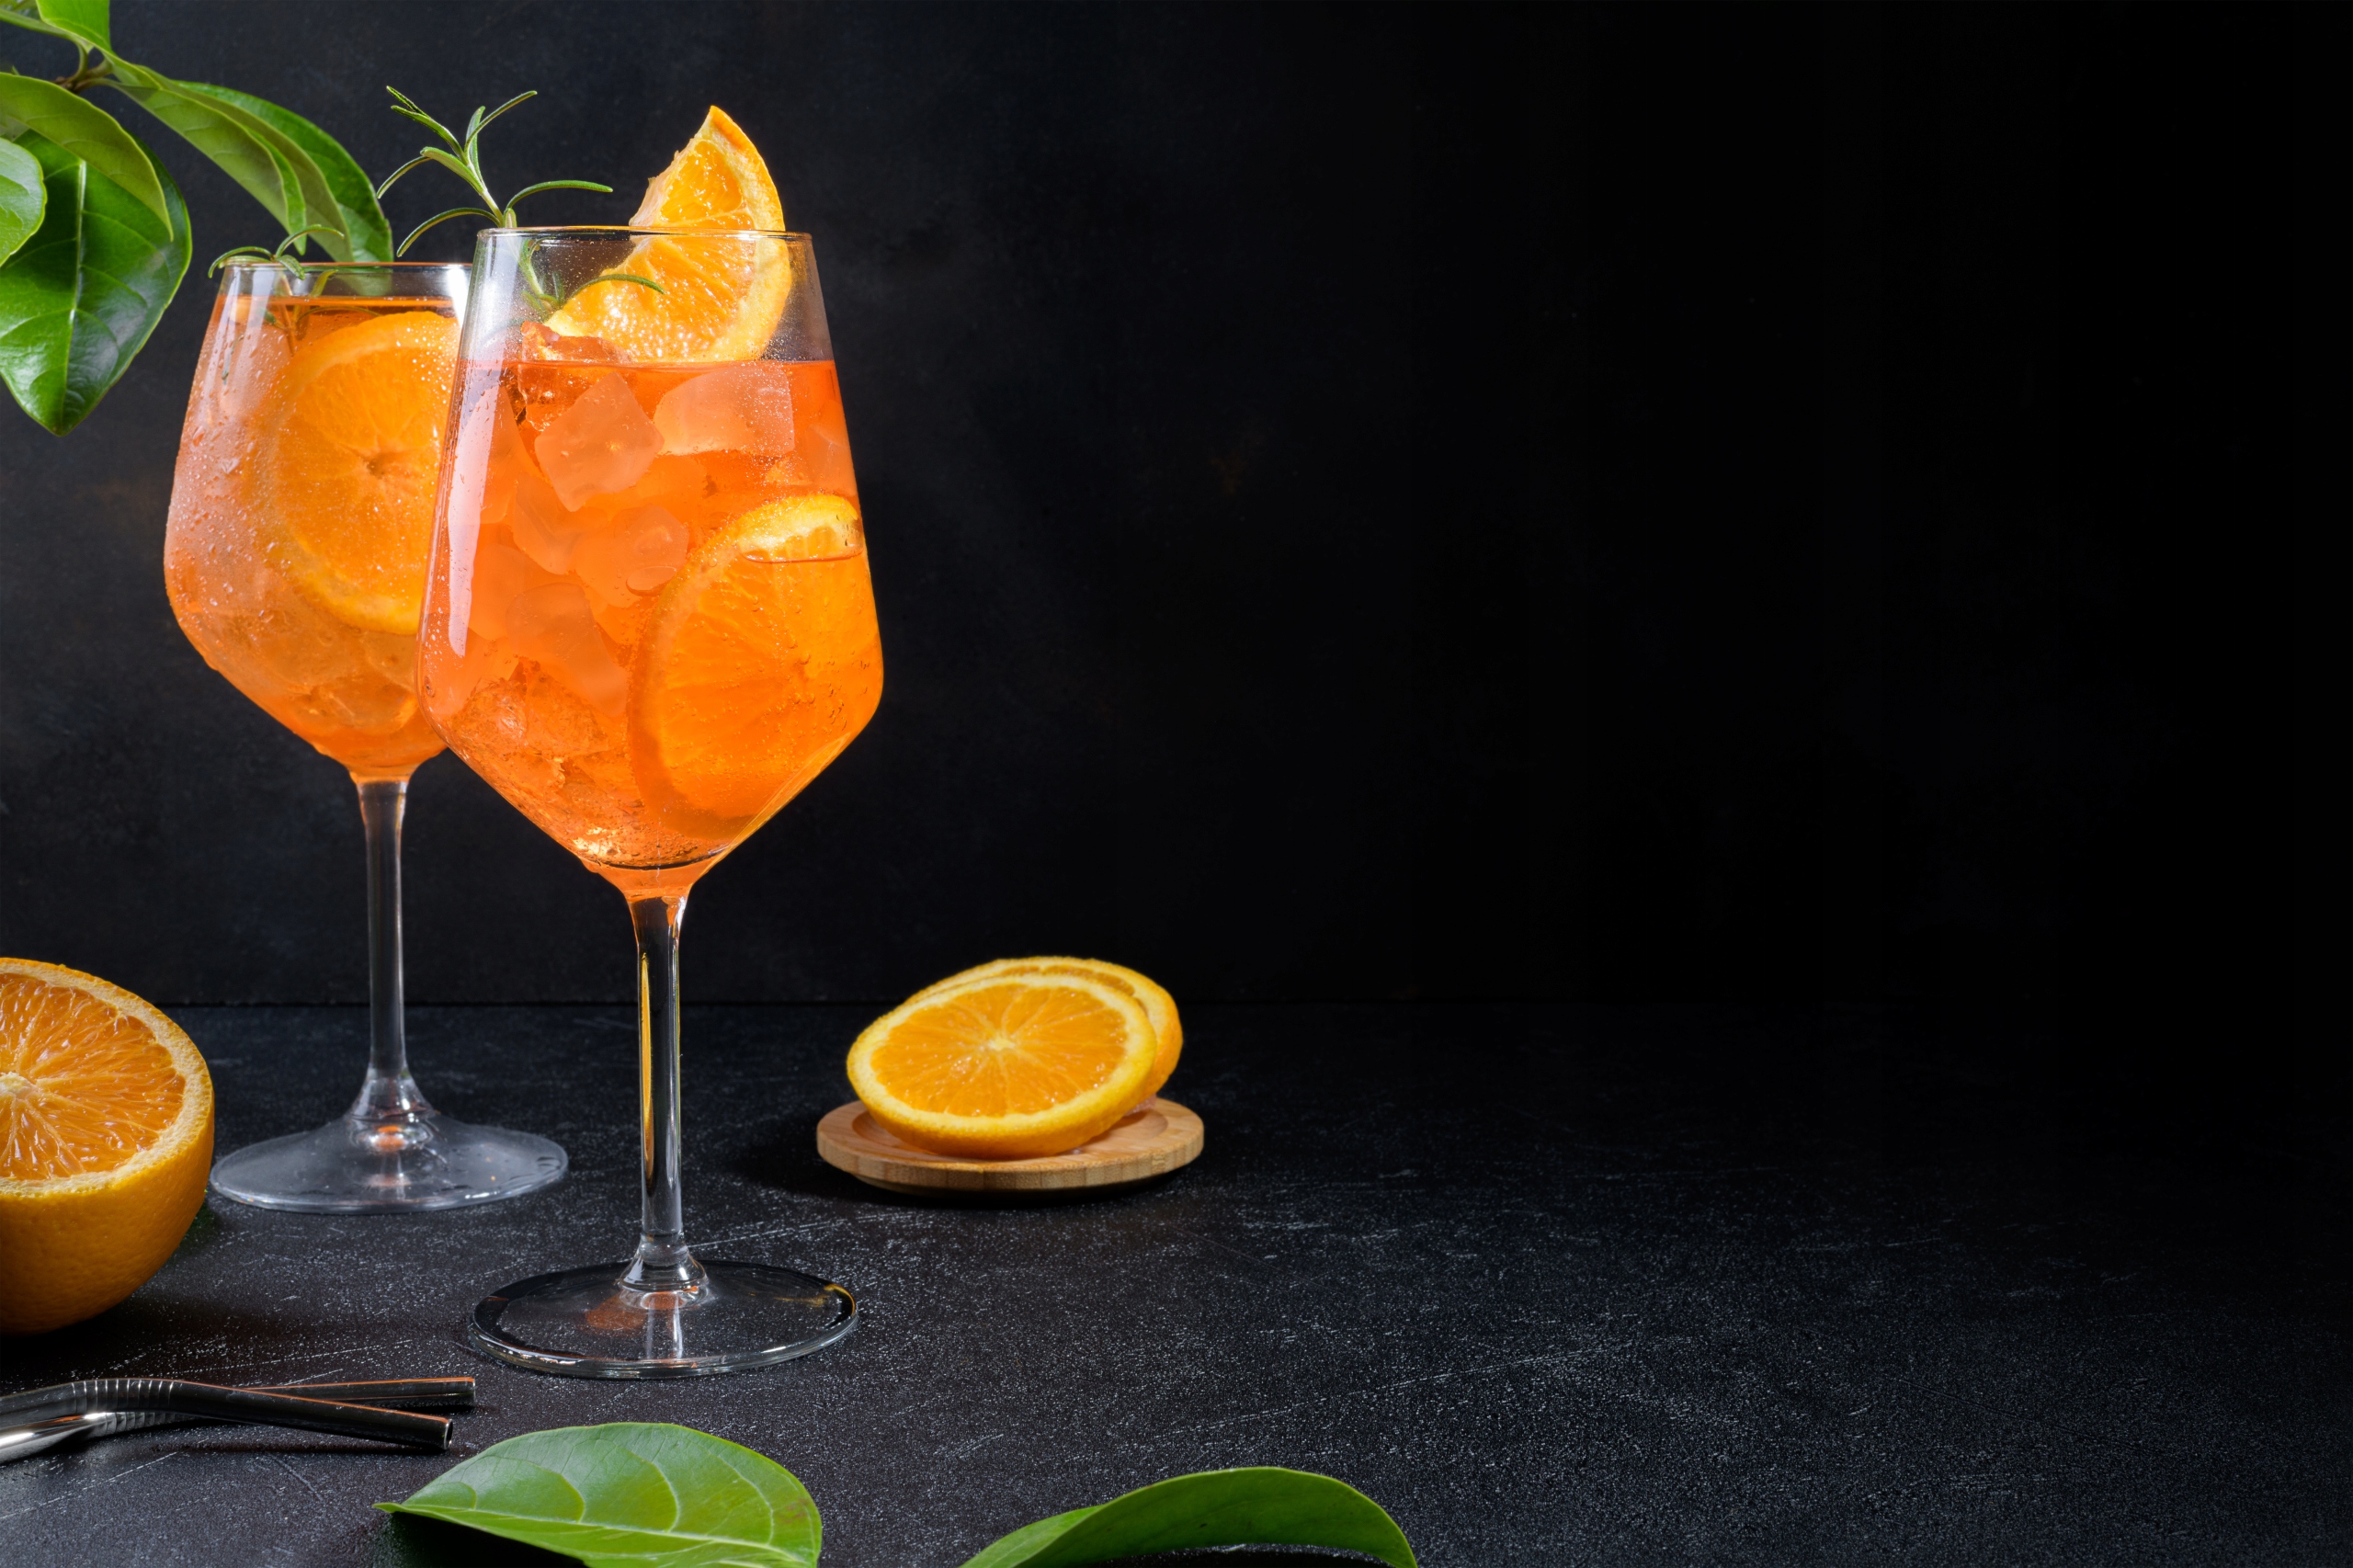 Oran-Soda l'Aranciata - napój o smaku pomarańczy 330ml, Delikatesy włoskie  \ Napoje